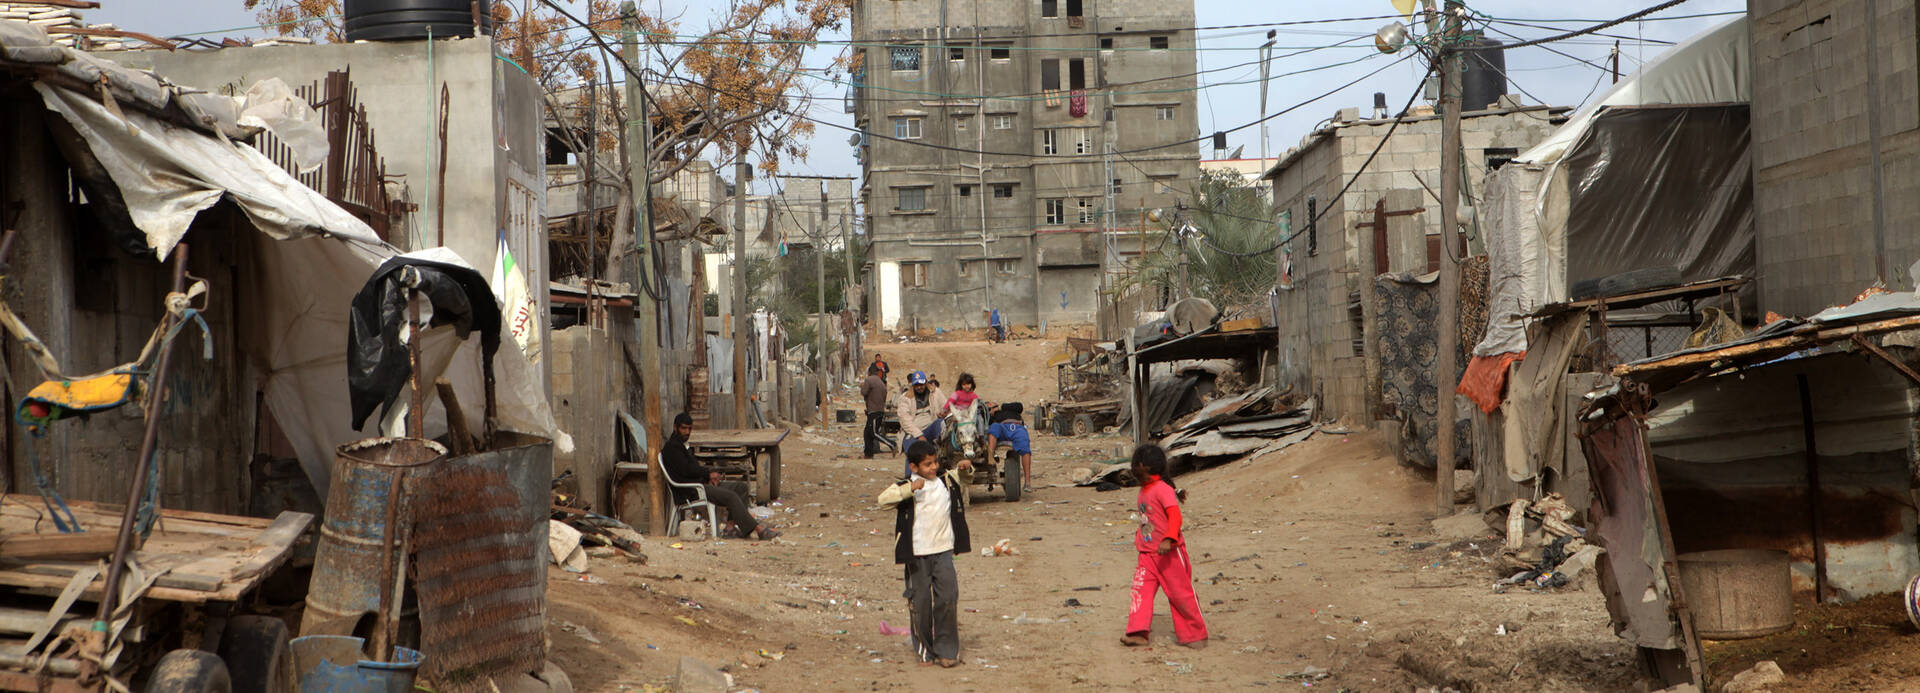 Im Jahr 2013 spielten Kinder in den Straßen von Gaza – heute liegen überall nur noch Trümmer.